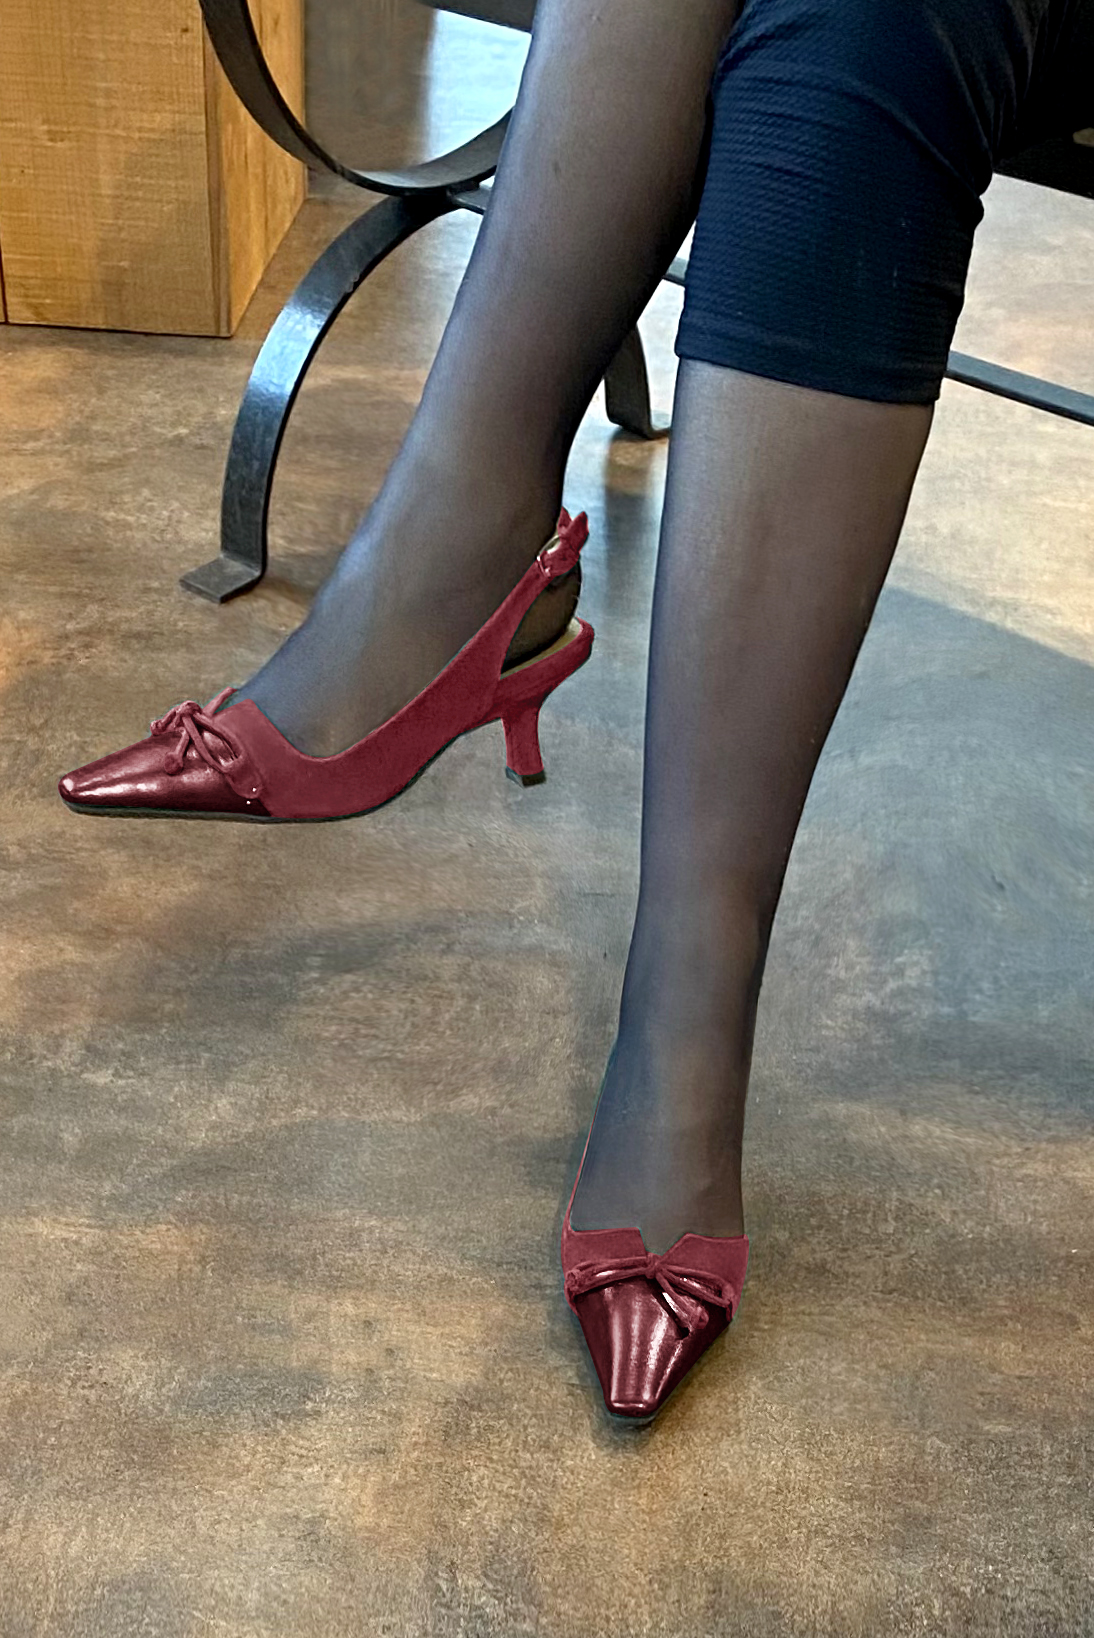 Chaussure femme à brides :  couleur rouge bordeaux. Bout effilé. Talon mi-haut bobine. Vue porté - Florence KOOIJMAN